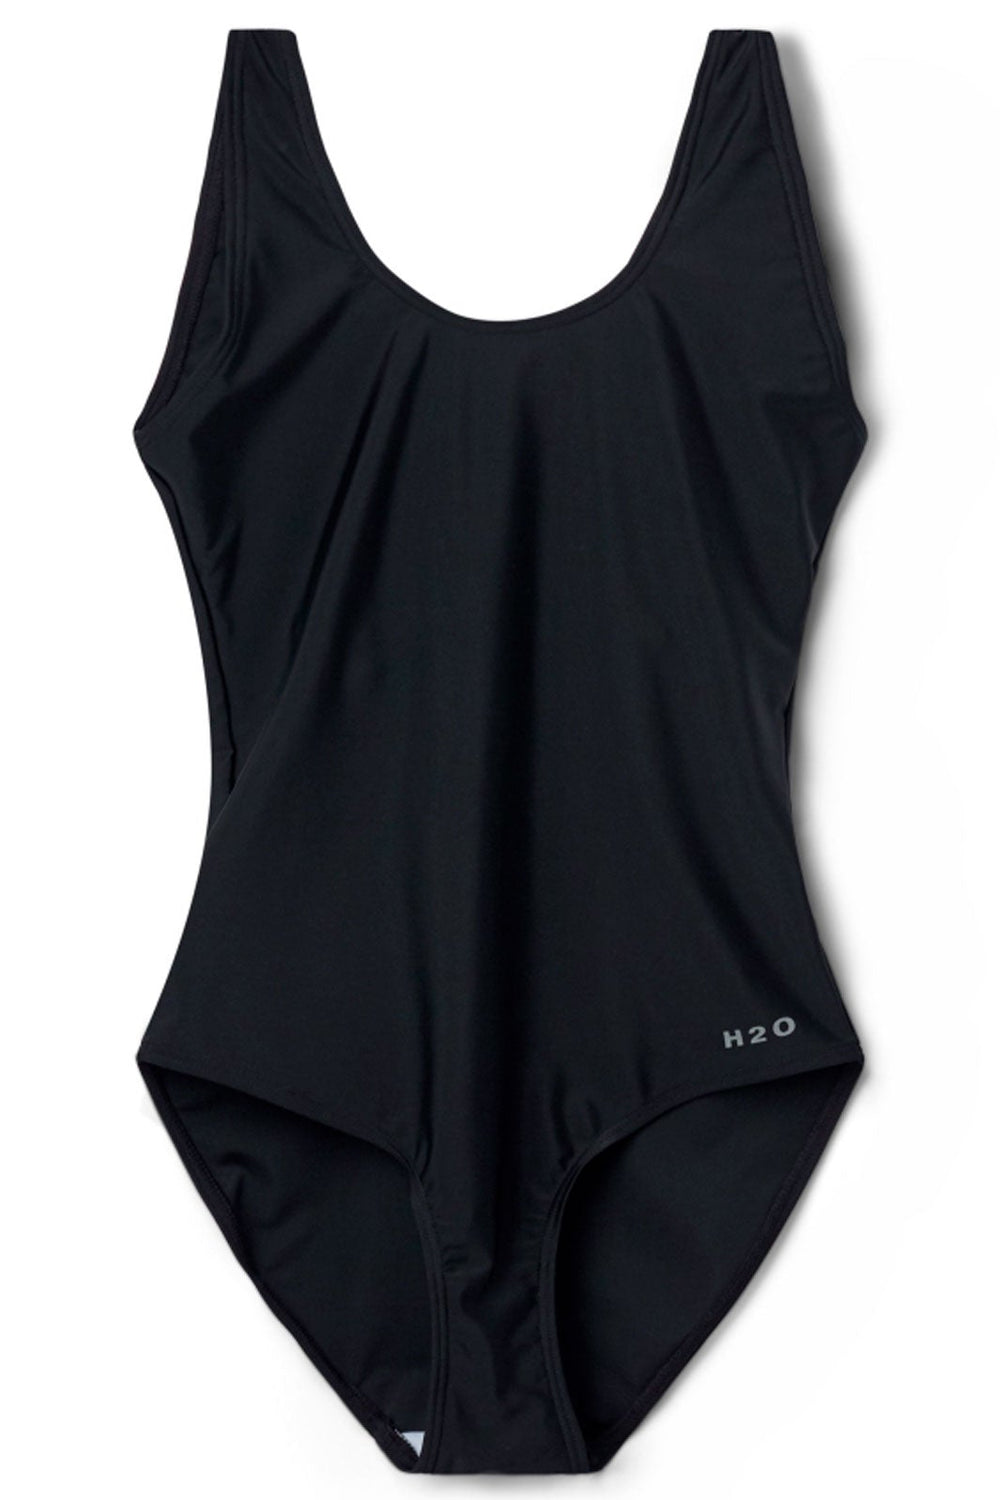 H2O - Tornø Swim Suit - Black Badedragter 